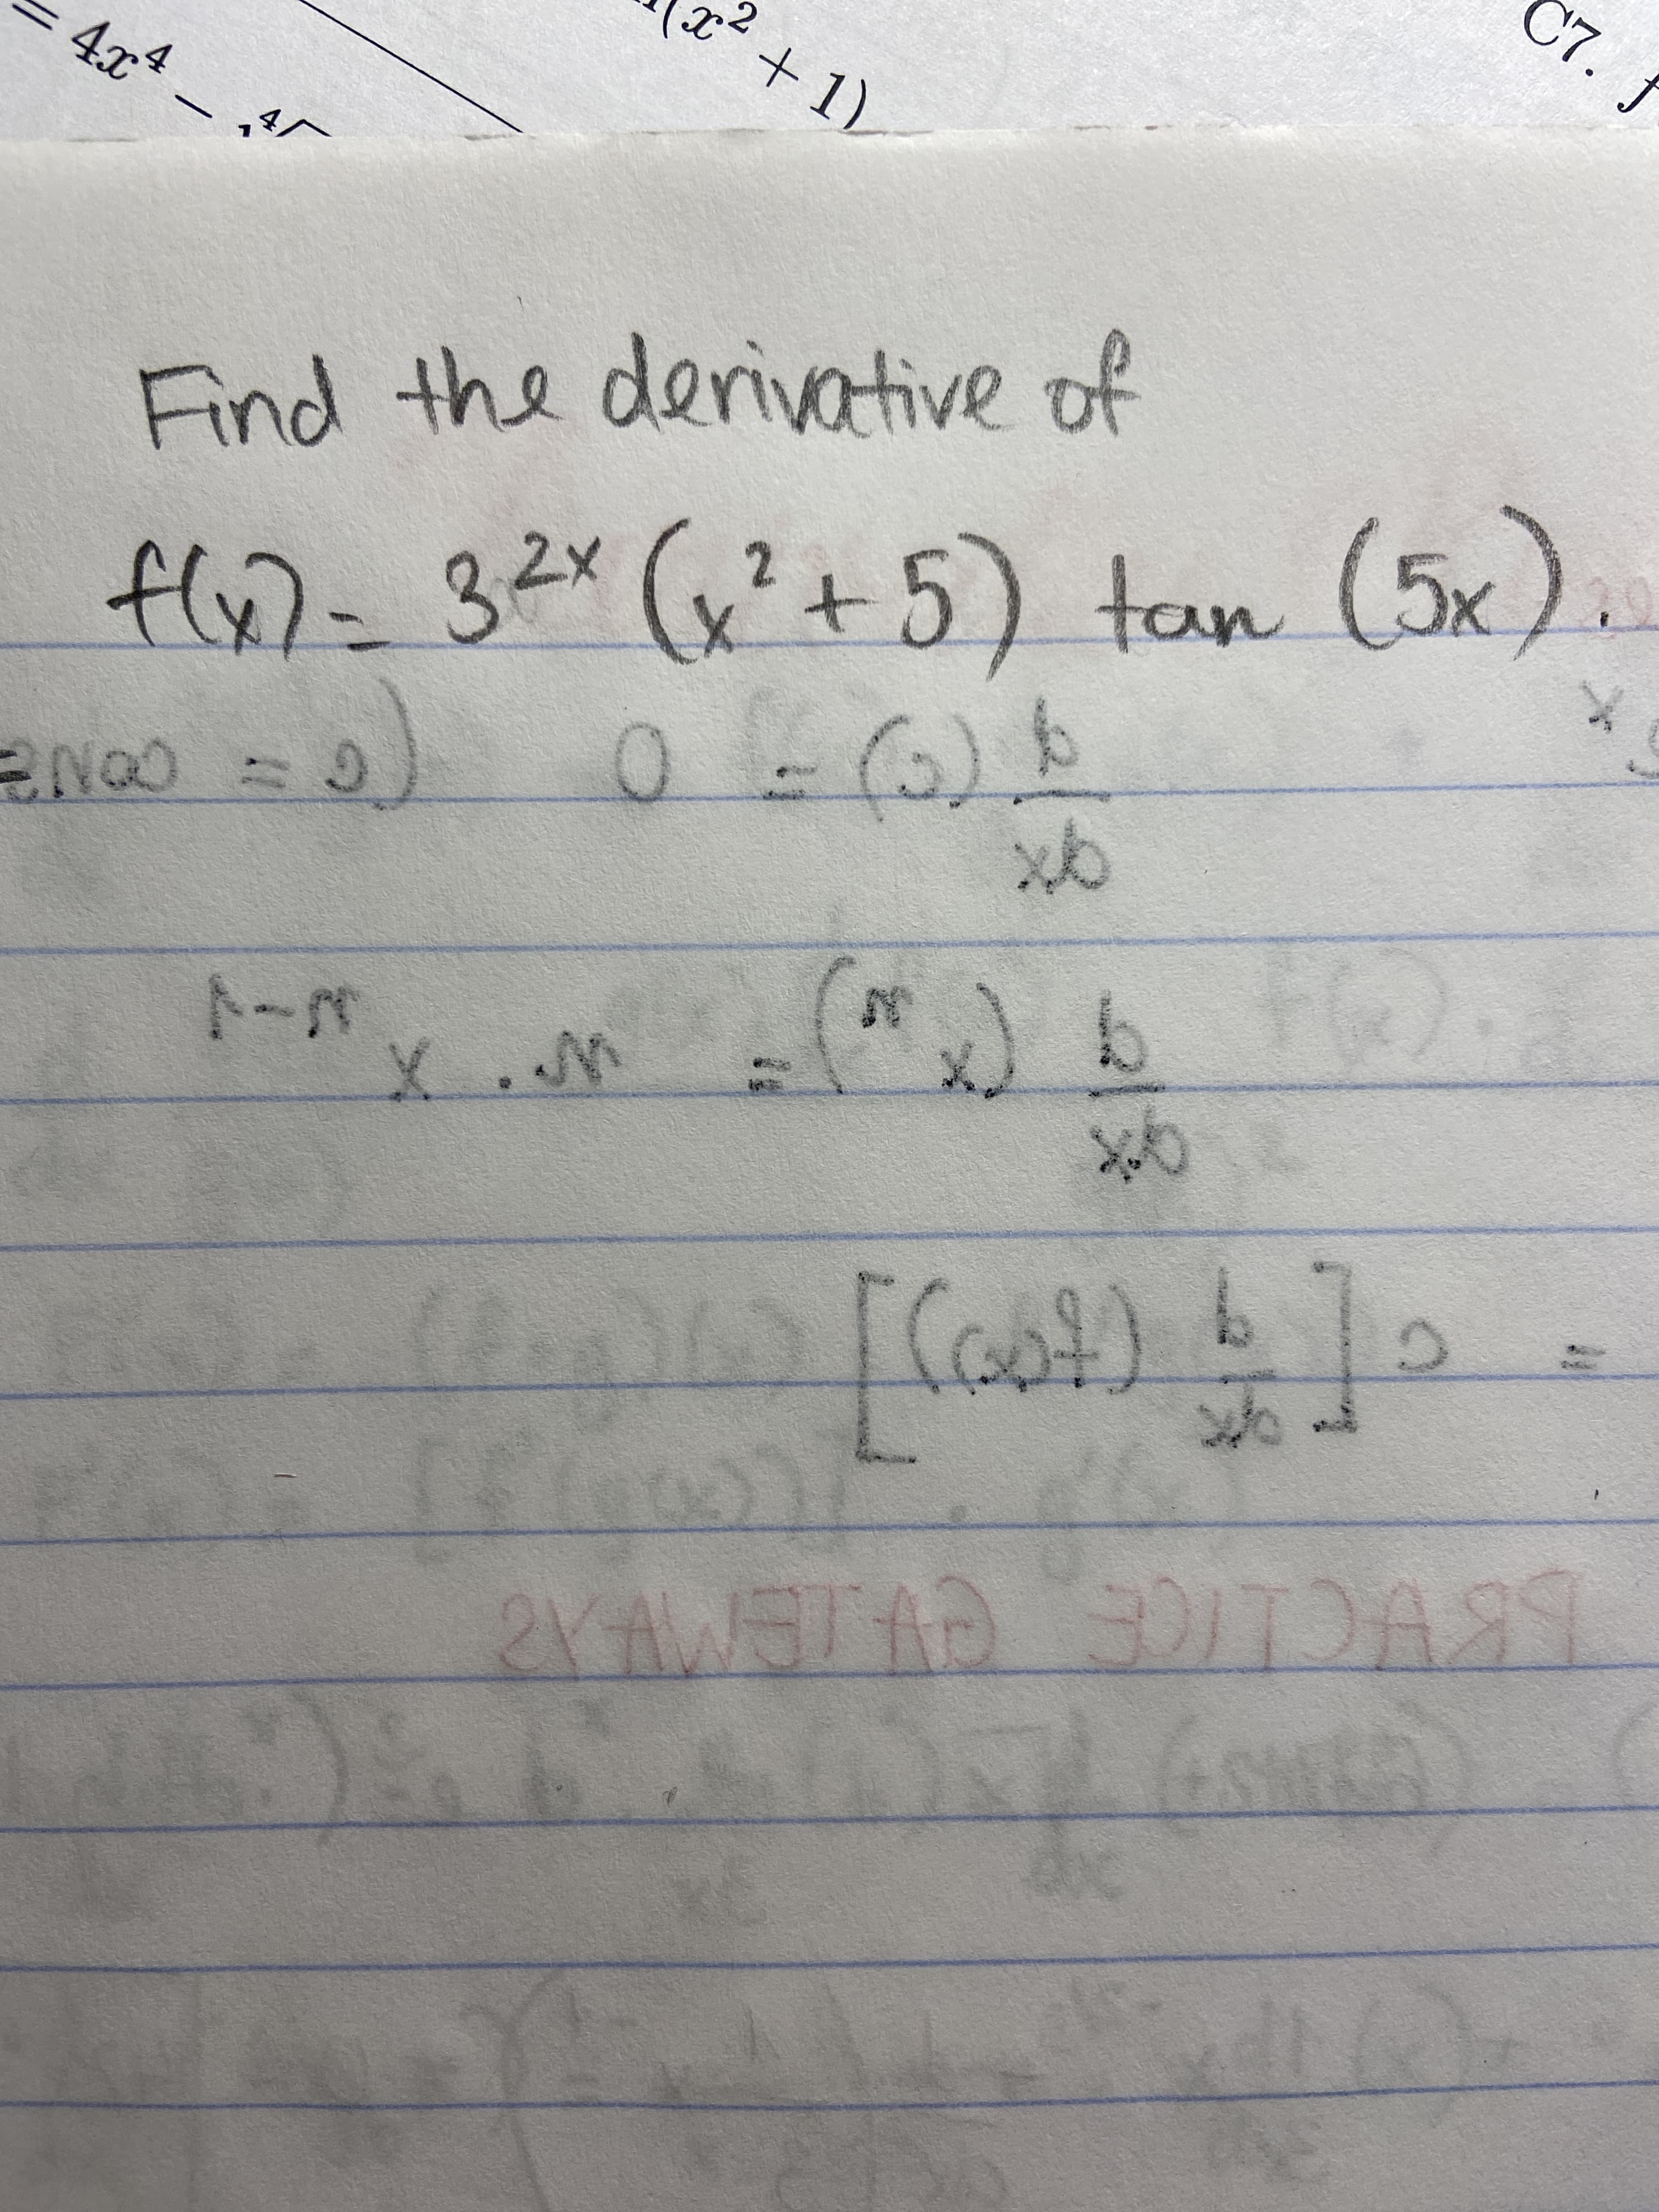 C7. f
+ 1)
4x4
Find the derivative of
f)=32"(x²+5) tan (5x).
न ज
3x
